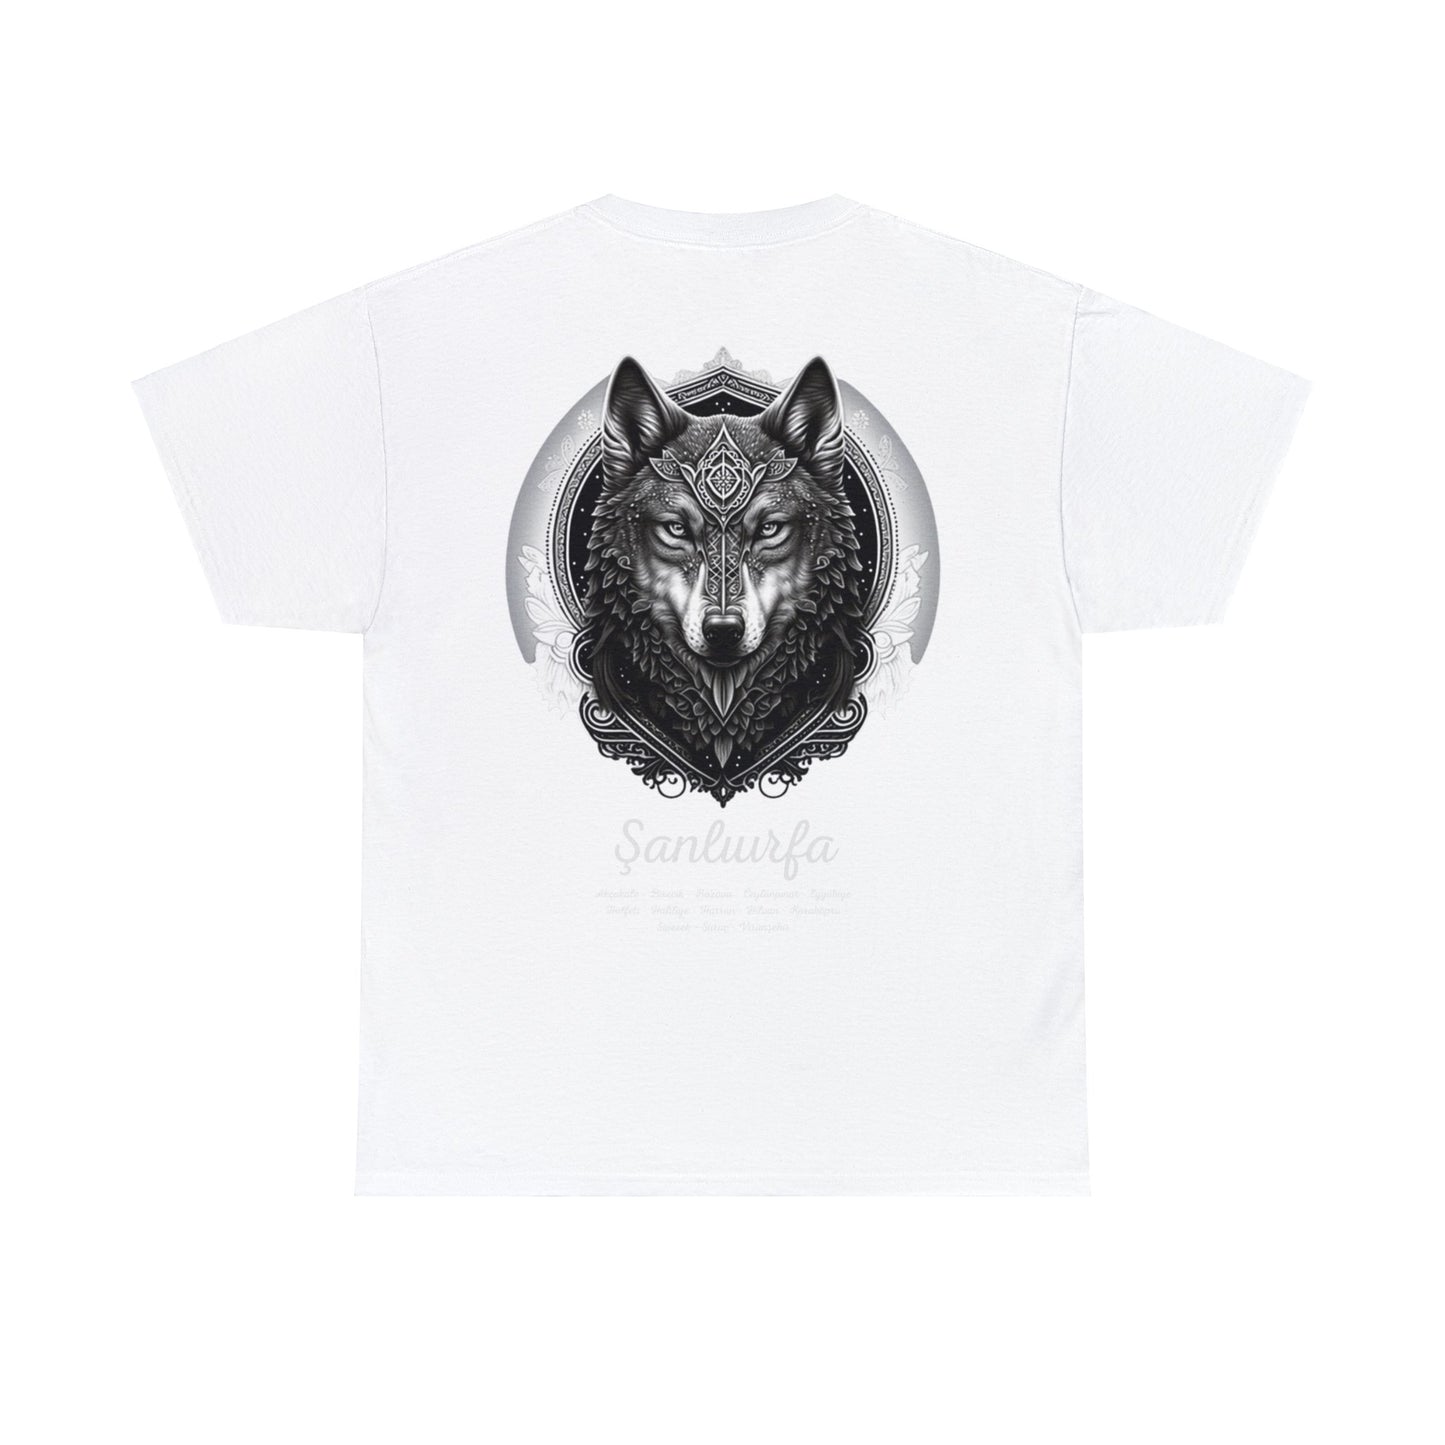 Kurt - 63 Şanlıurfa - T-Shirt - Back Print - Black/White